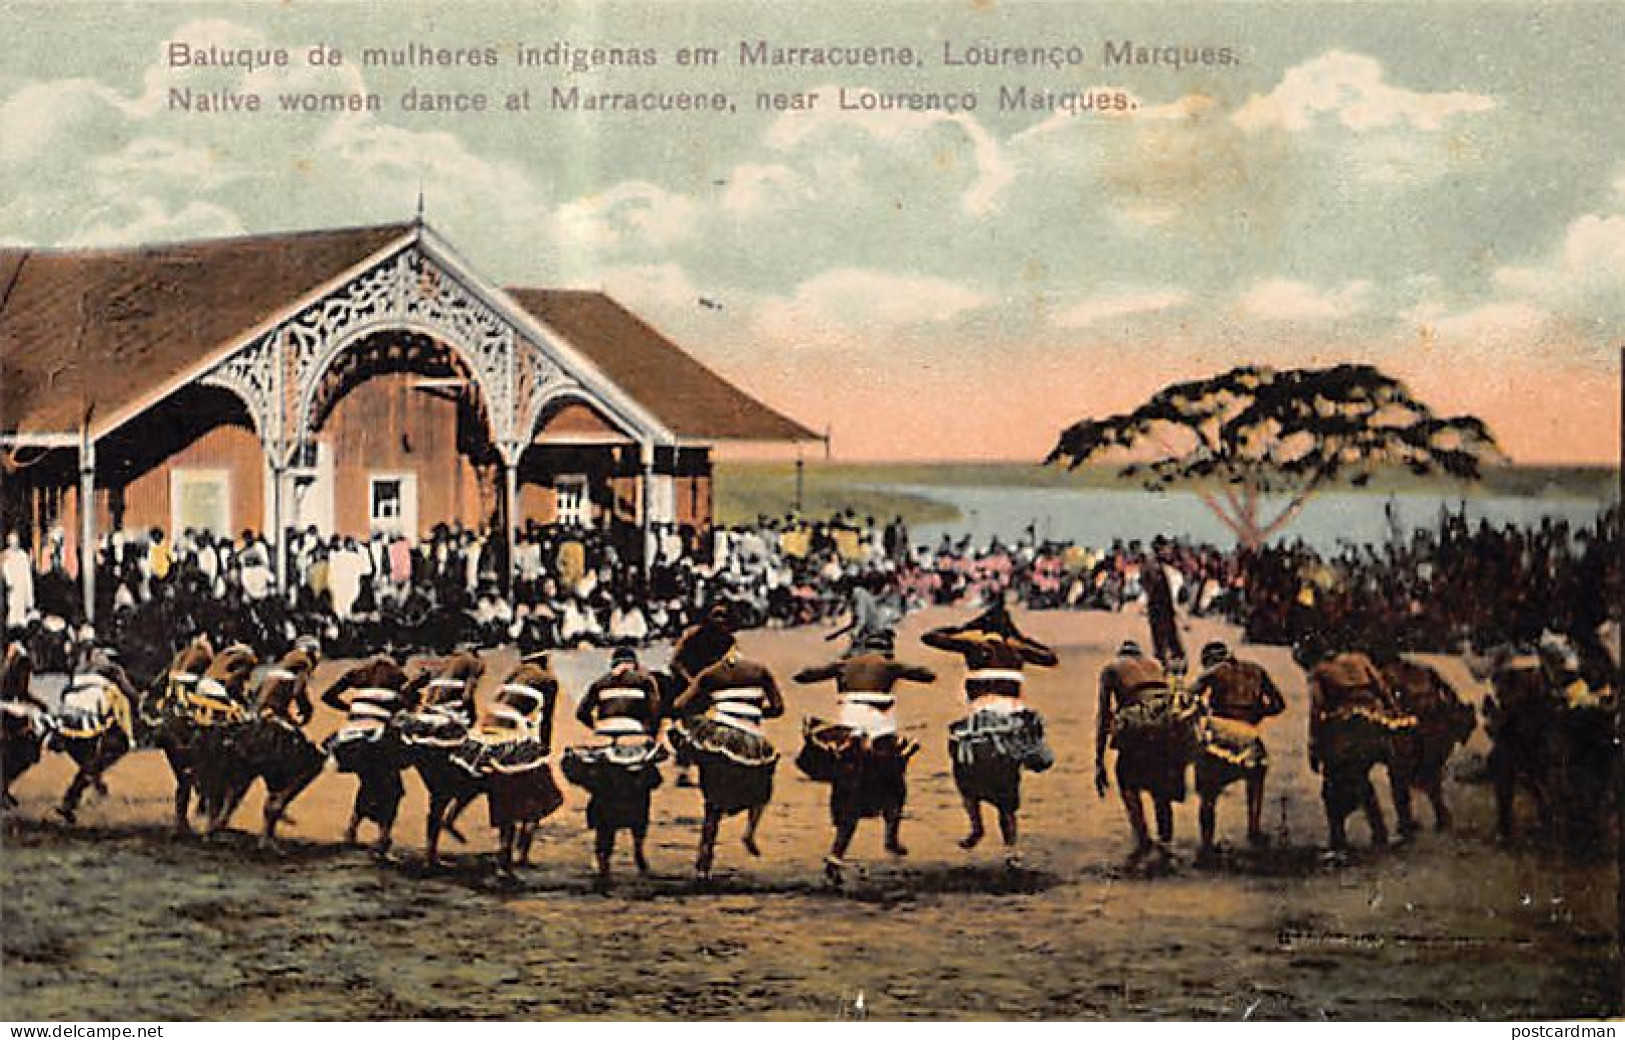 MOÇAMBIQUE Mozambique - Batuque De Mulheres Indigenas Em Marracuene - Native Women Dance At Marracuene - Ed. / Publ. Spa - Mozambique